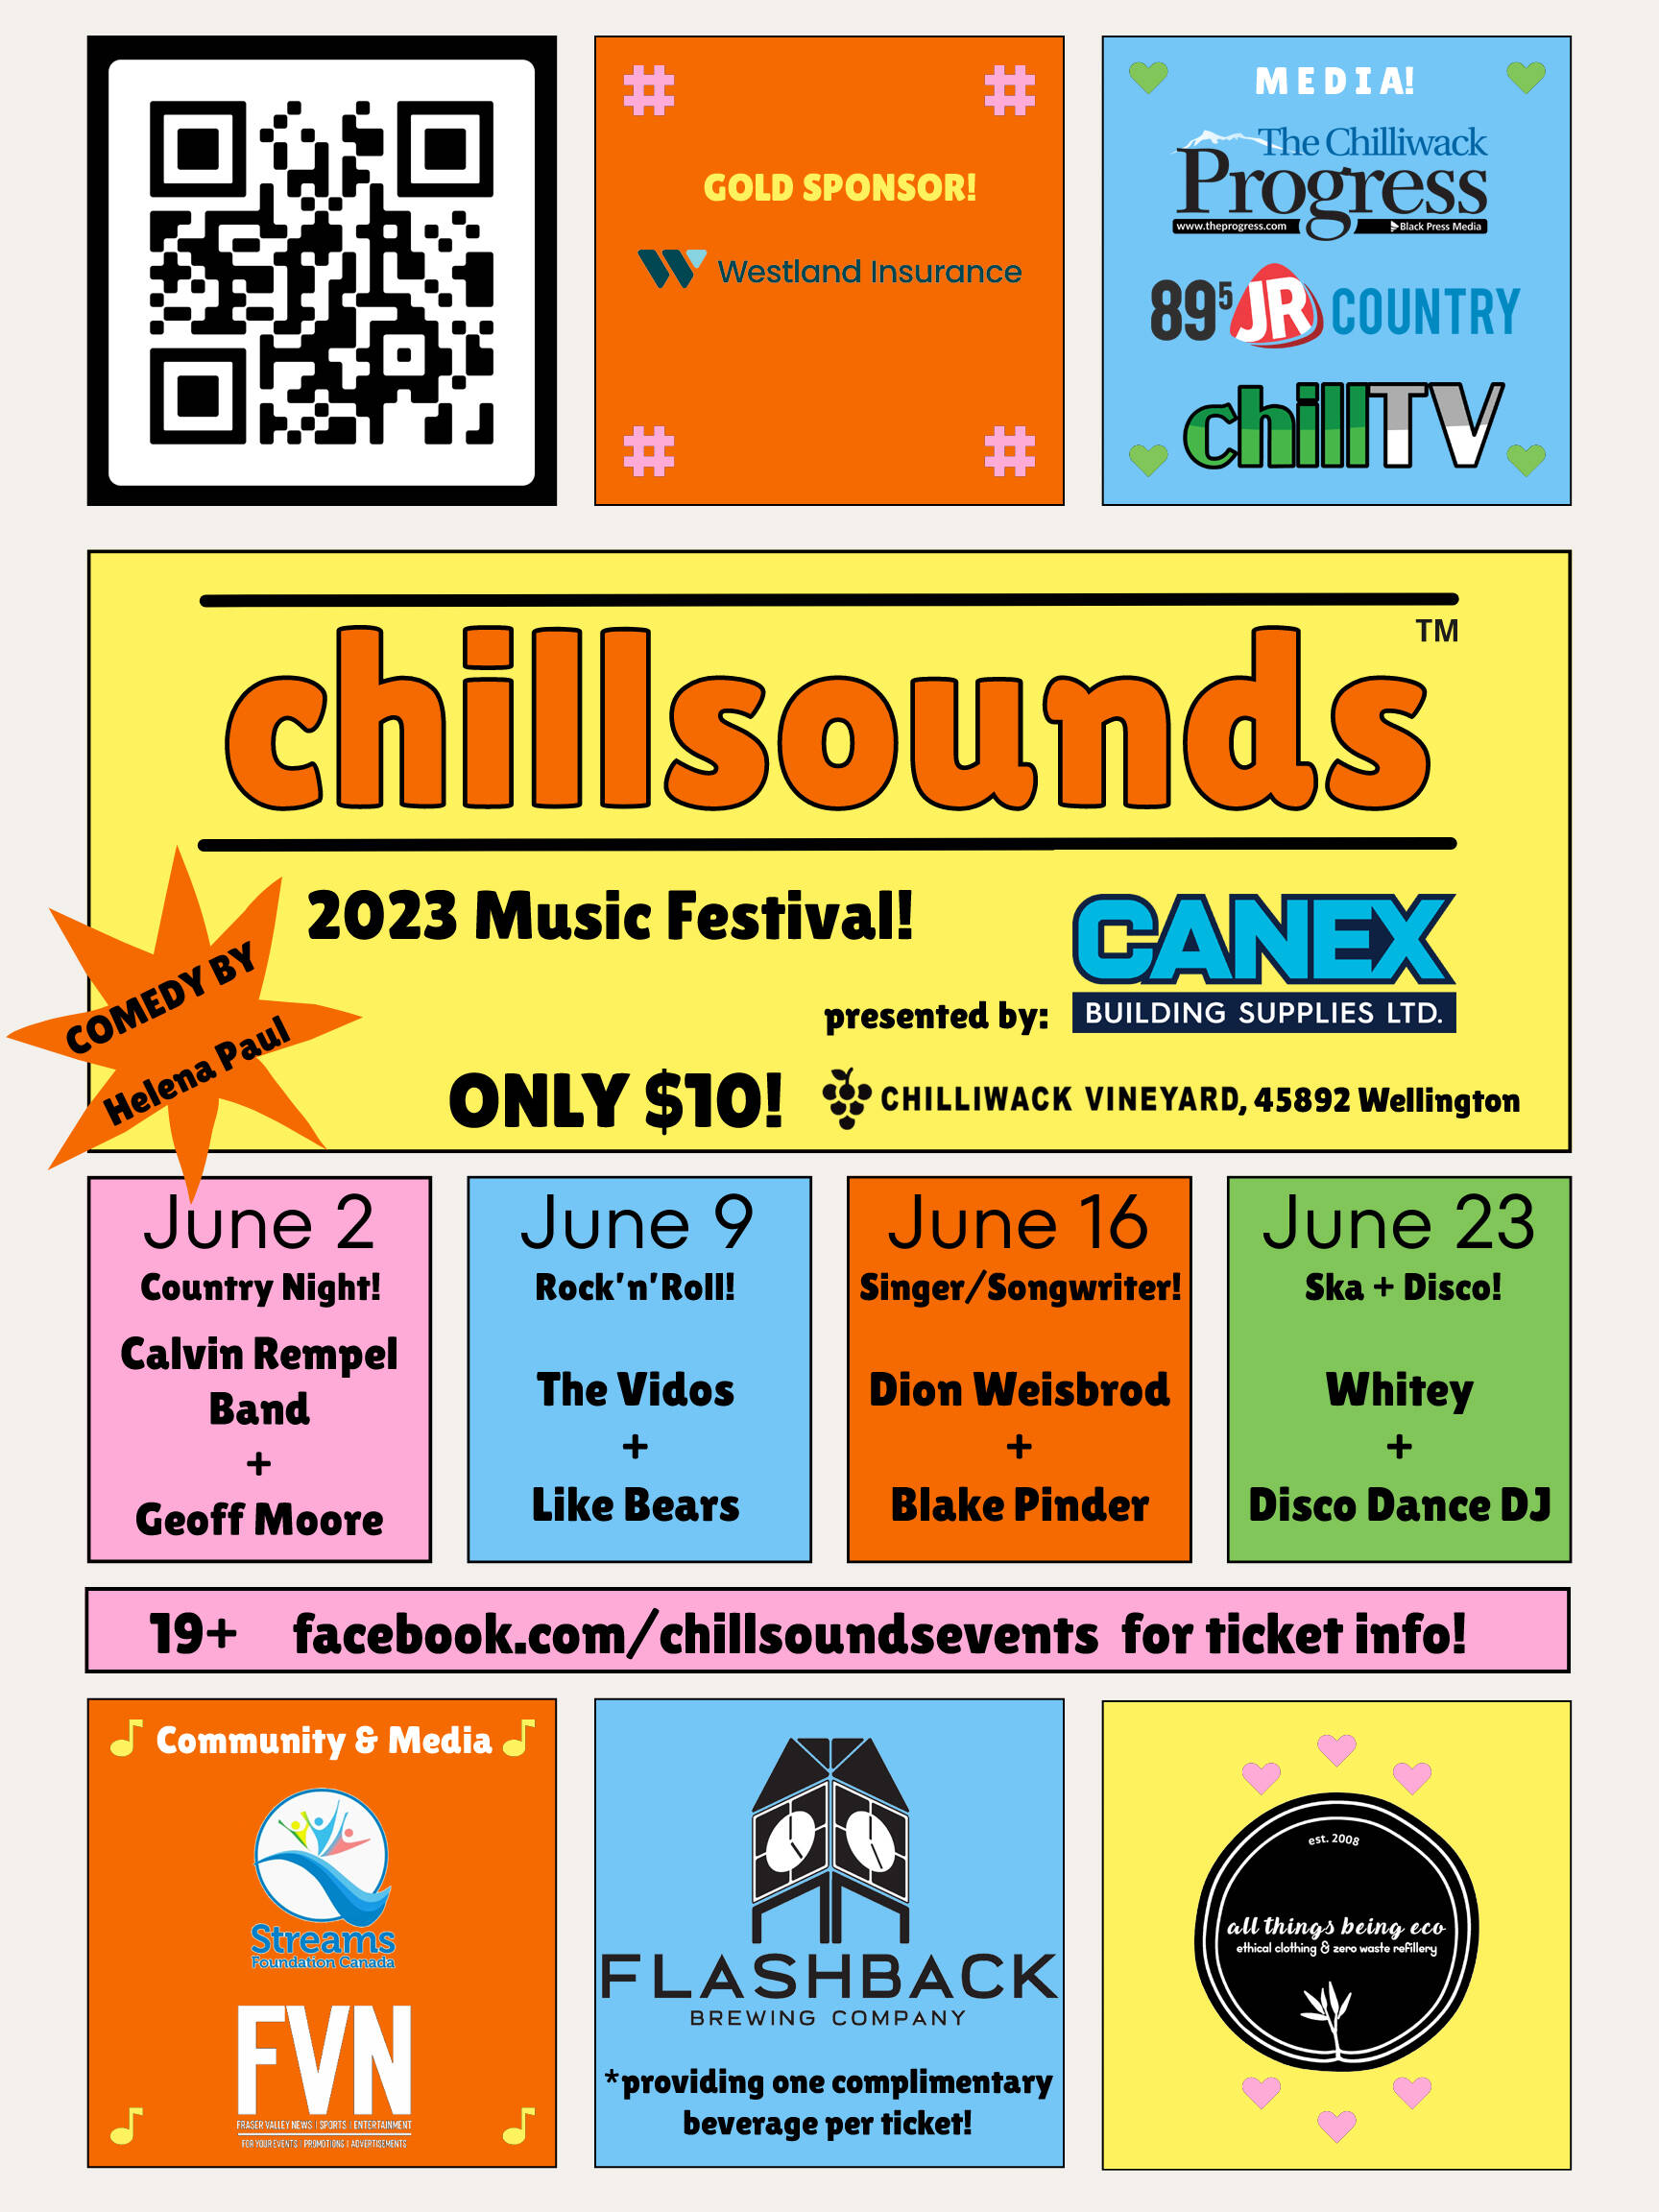 Chillsounds 2023 Music Festival poster. (ChillTV)